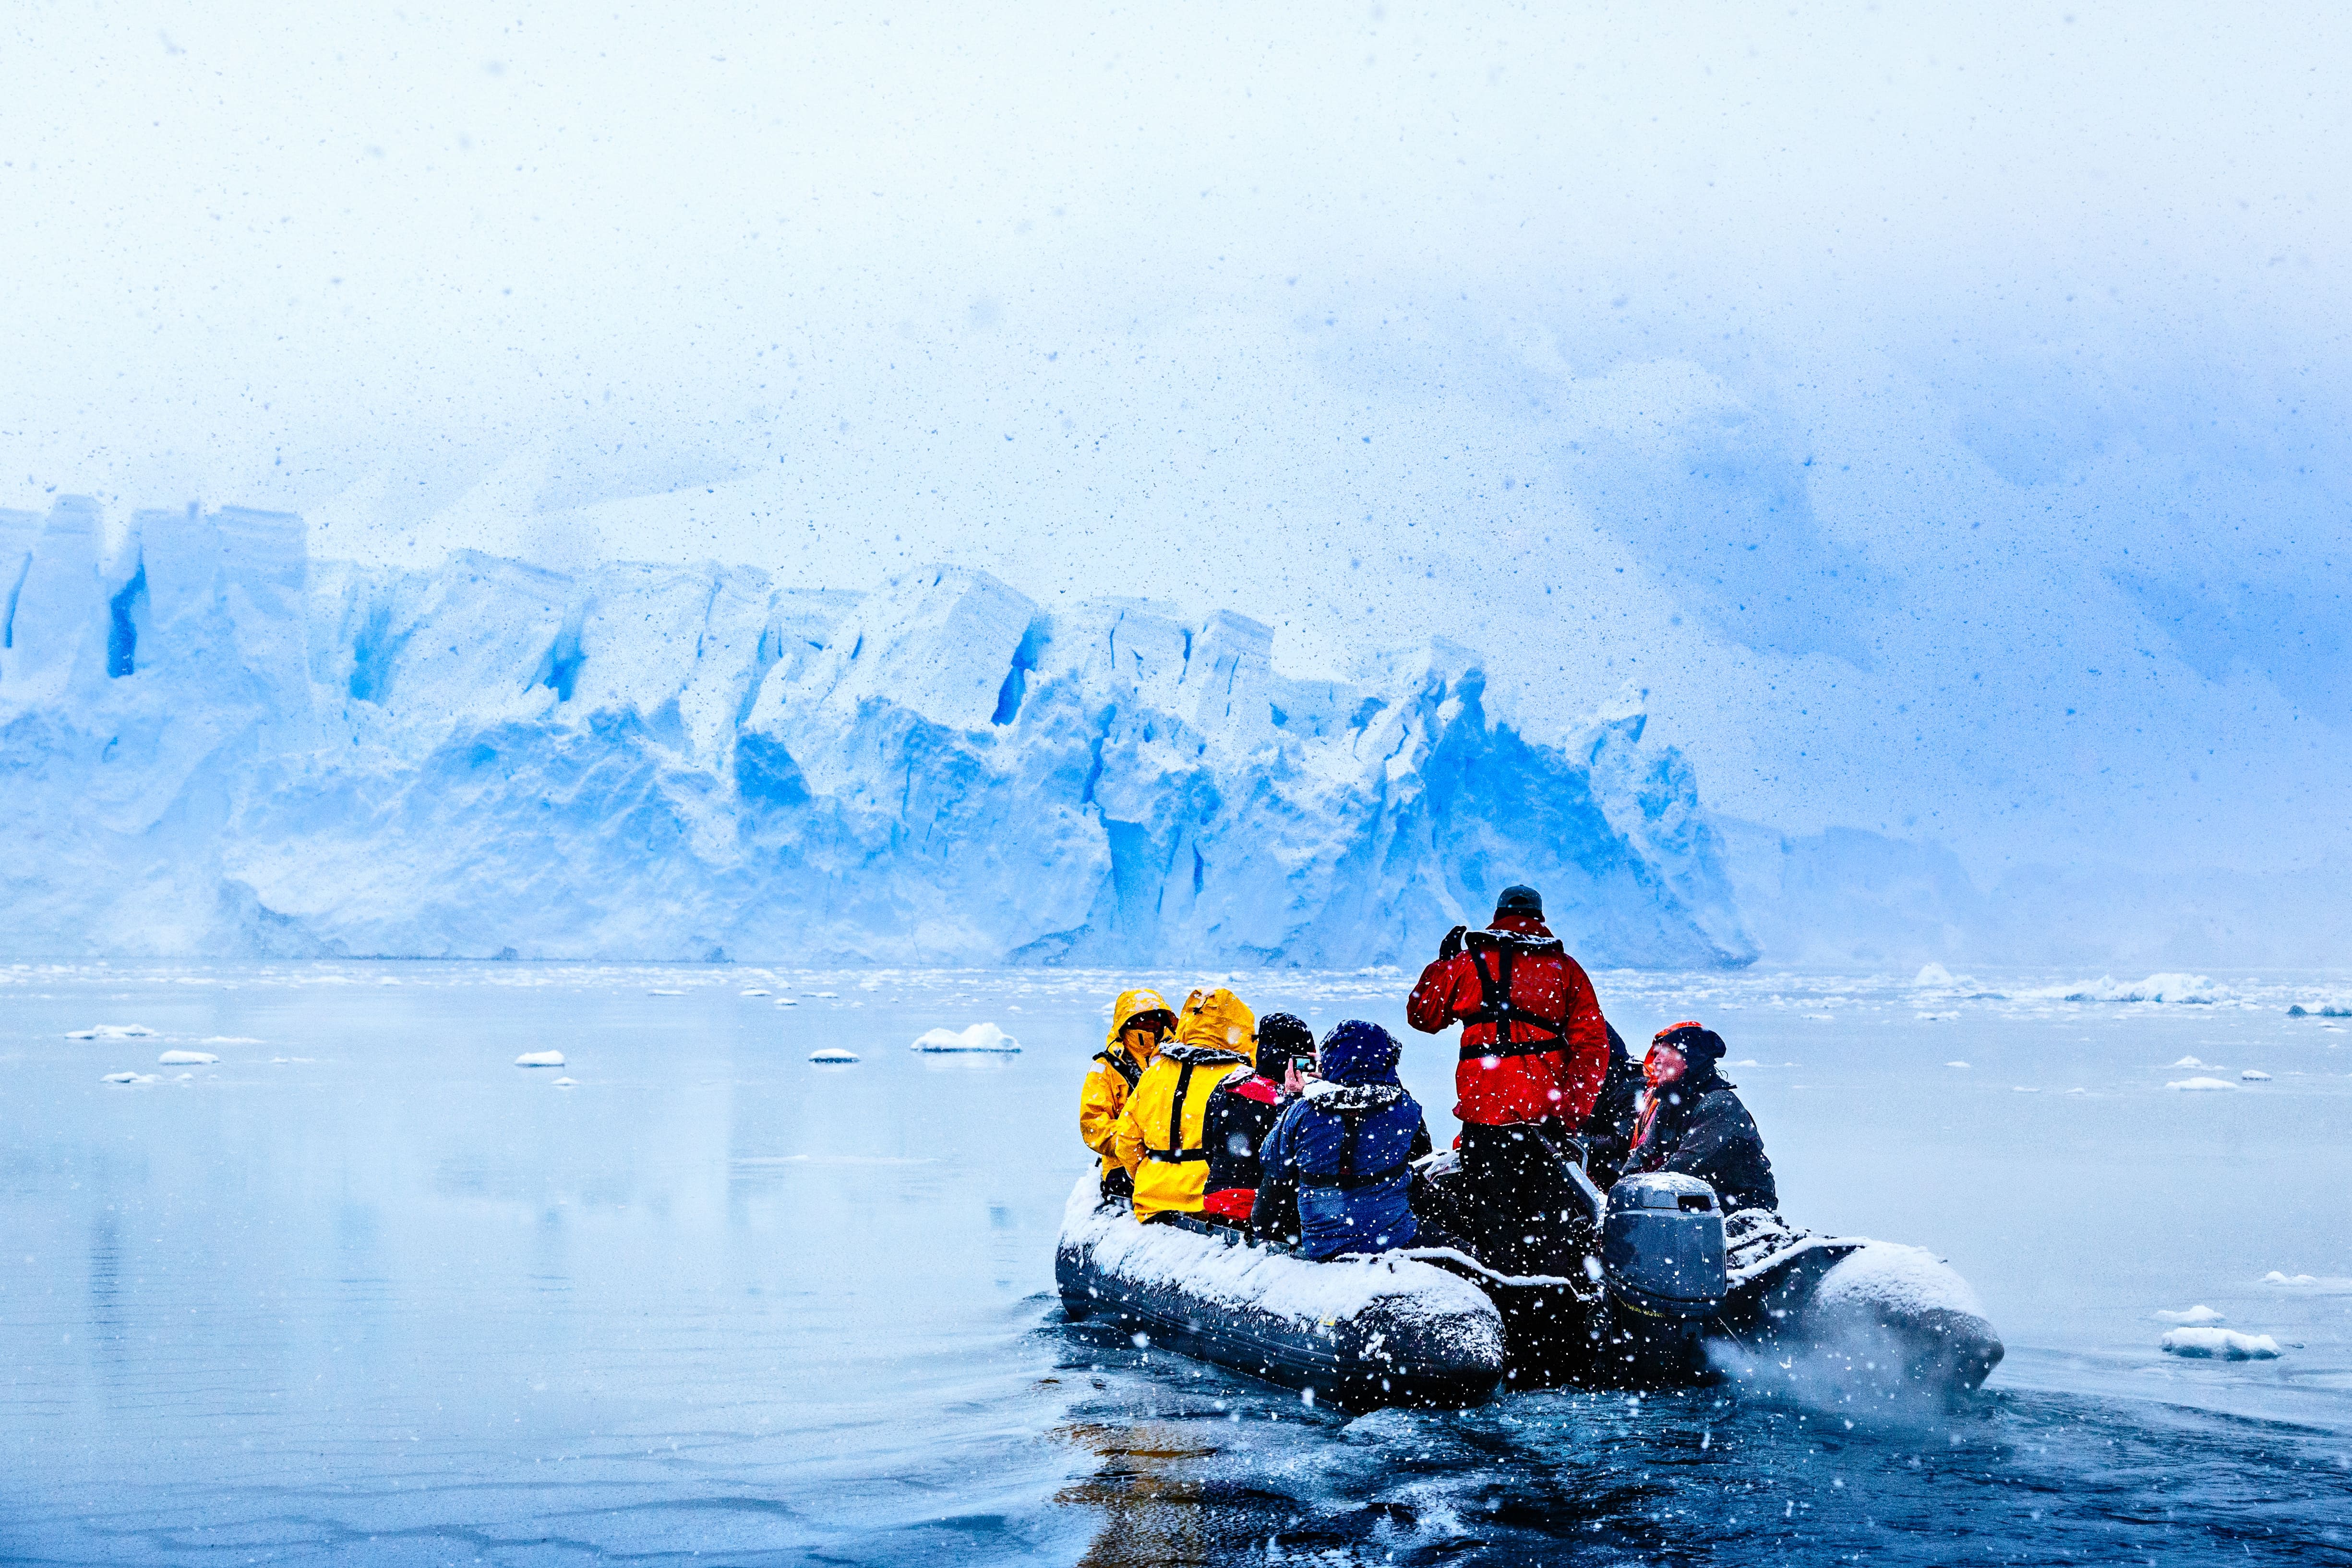 Chute de neige sur le bateau avec des touristes gelés conduisant vers l'énorme mur de glacier bleu en arrière-plan, près d'Almirante Brown, péninsule Antarctique © vadim.nefedov - stock.adobe.com